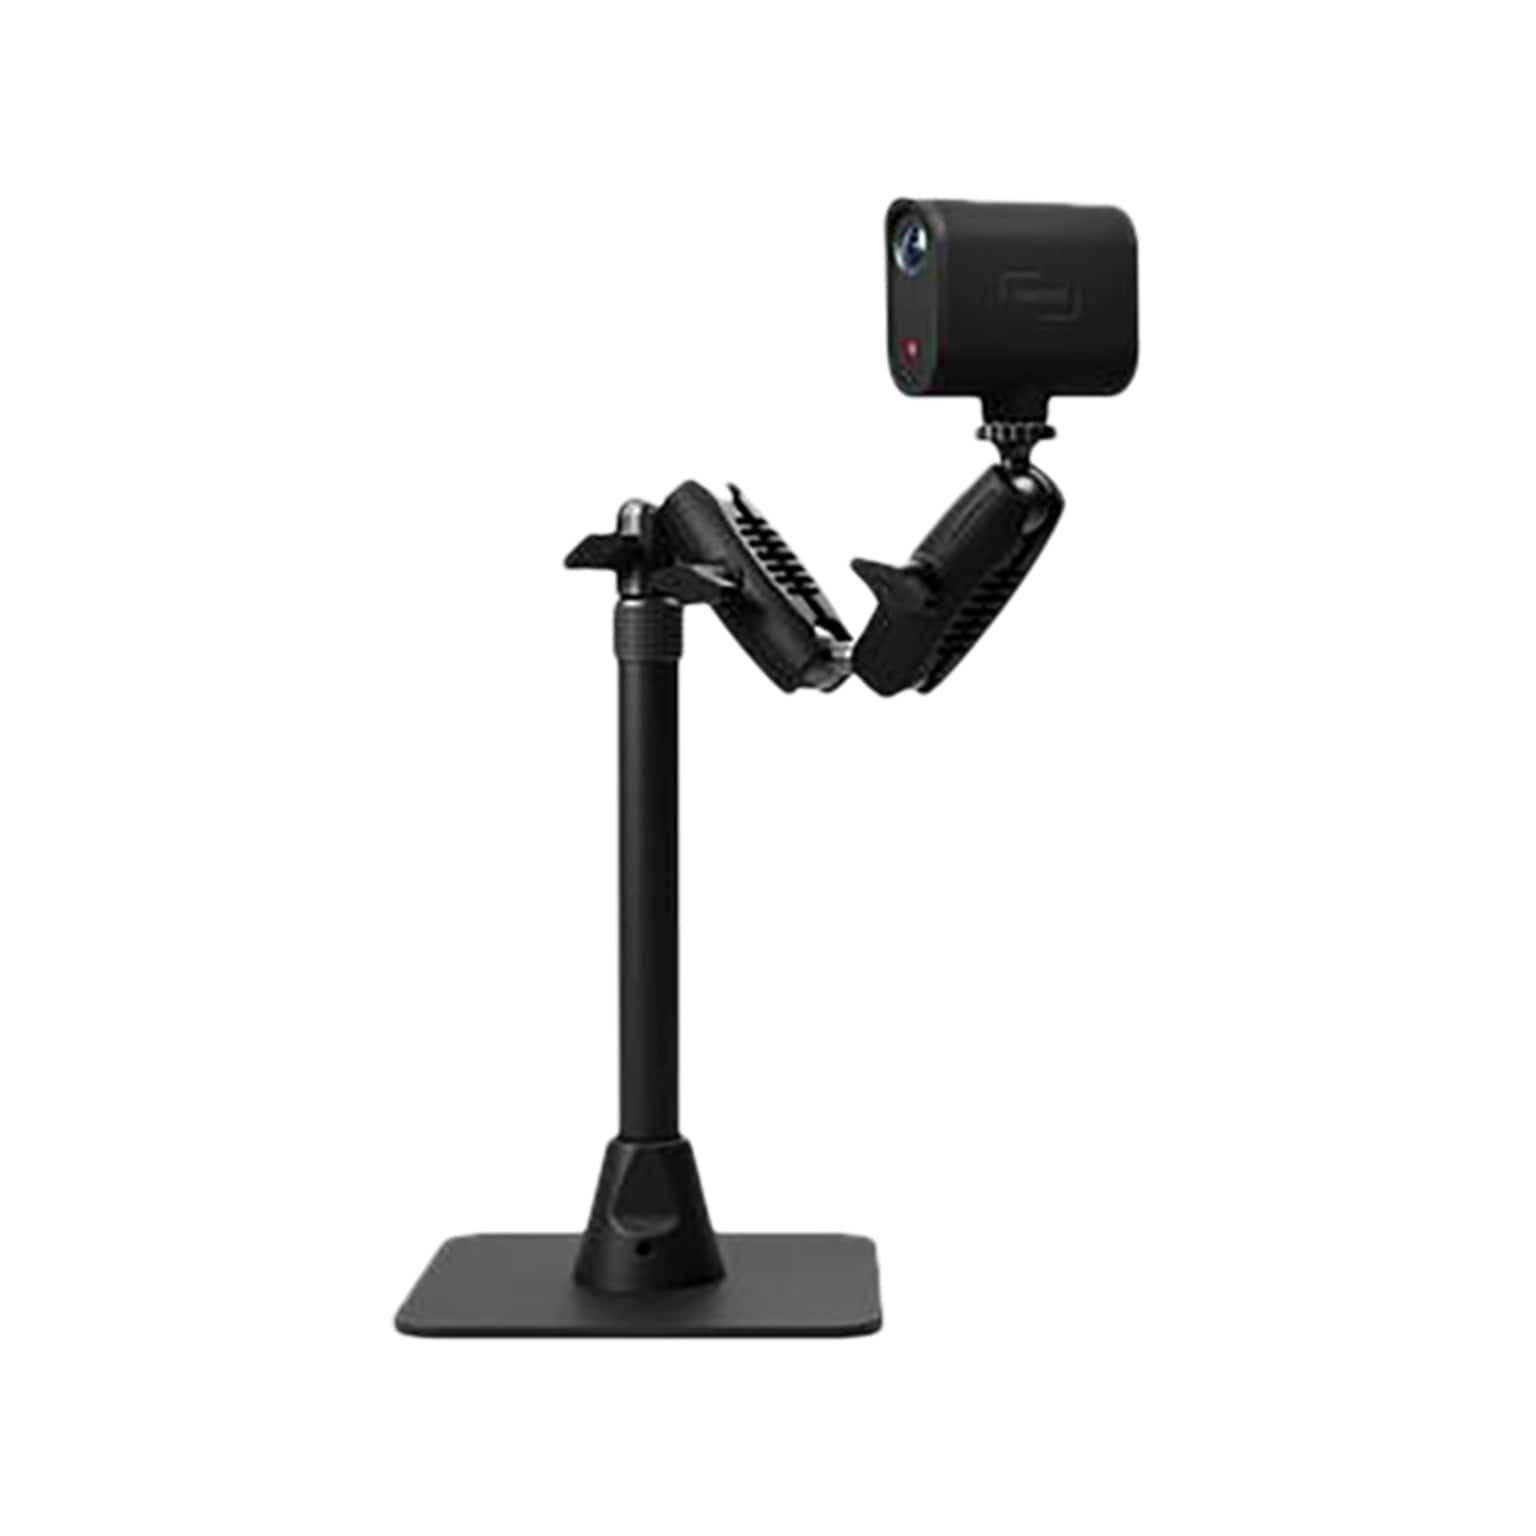 Logitech Mevo Table Stand for Mevo Start and Mevo Plus Cameras, Black (955-000005)